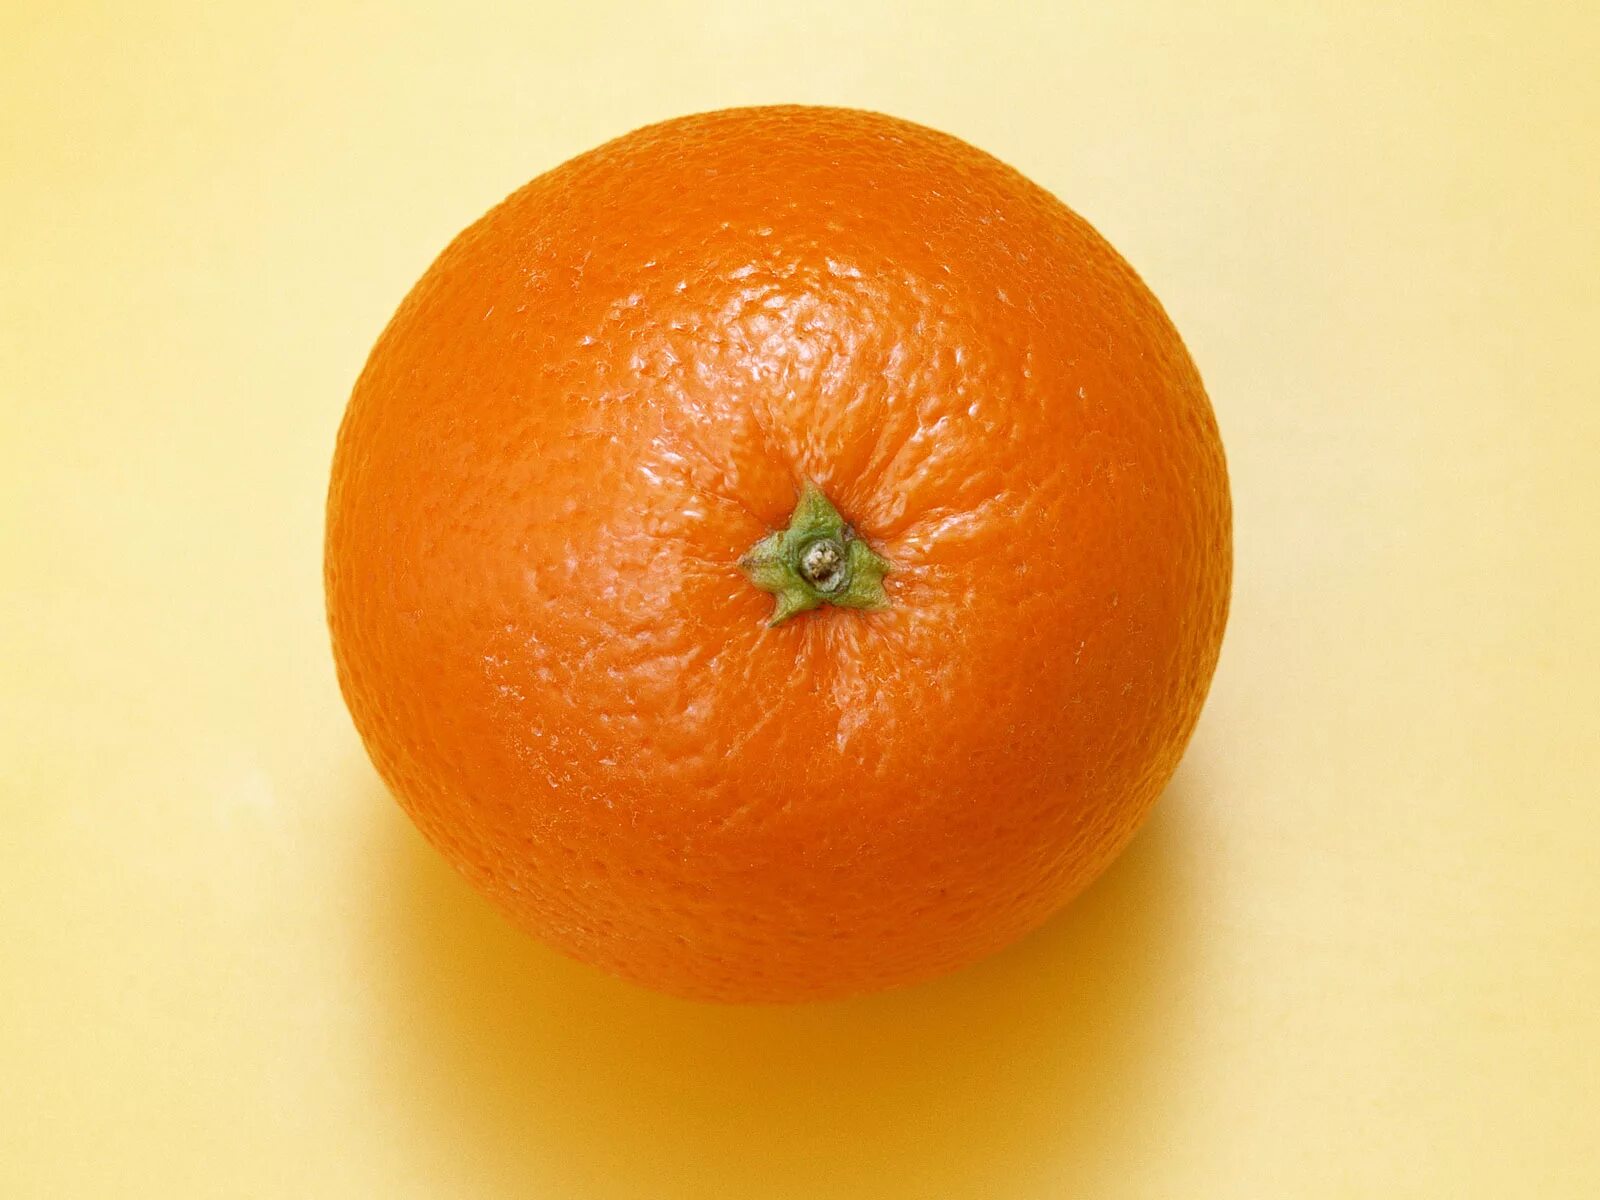 Apelsin 1:1. Померанец оранж. Апельсин сверху. Апельсин на белом фоне.